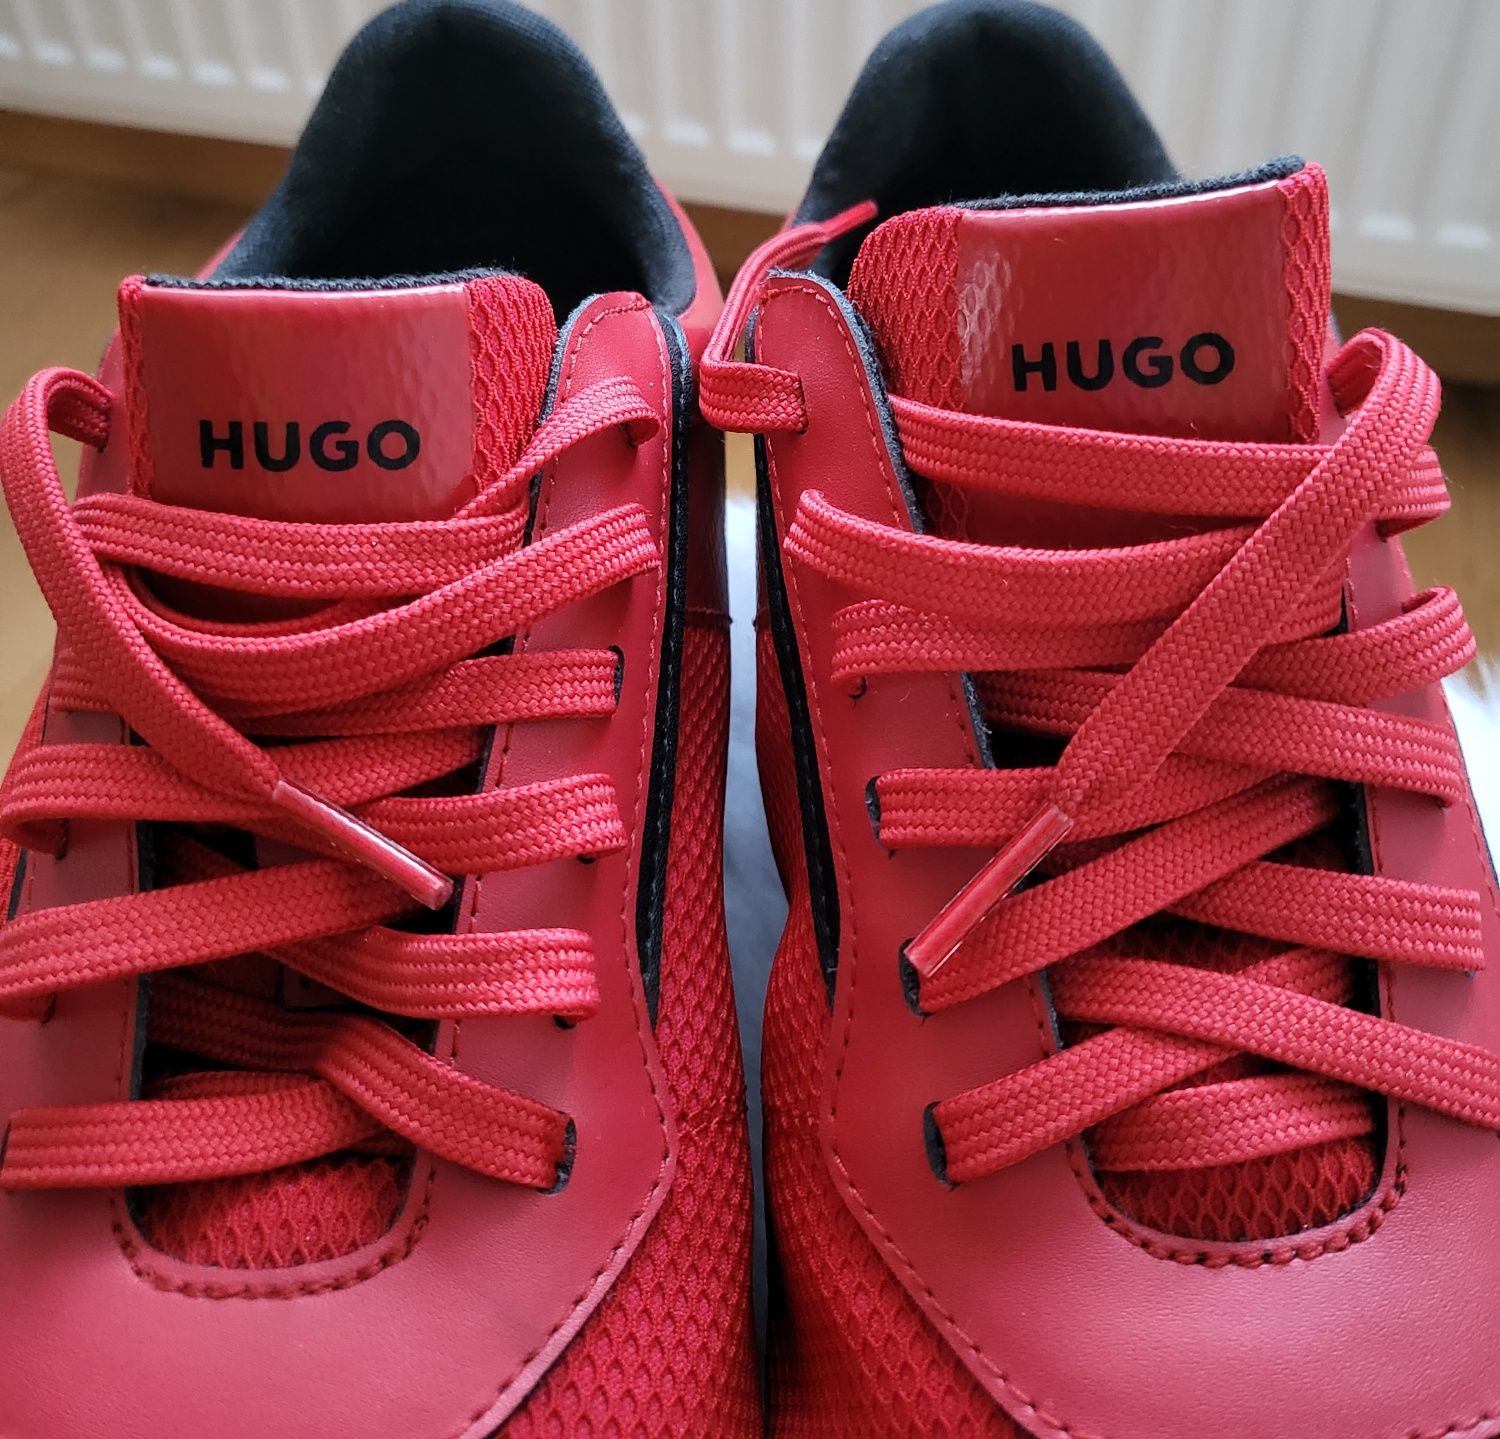 Buty Hugo czerwone 43